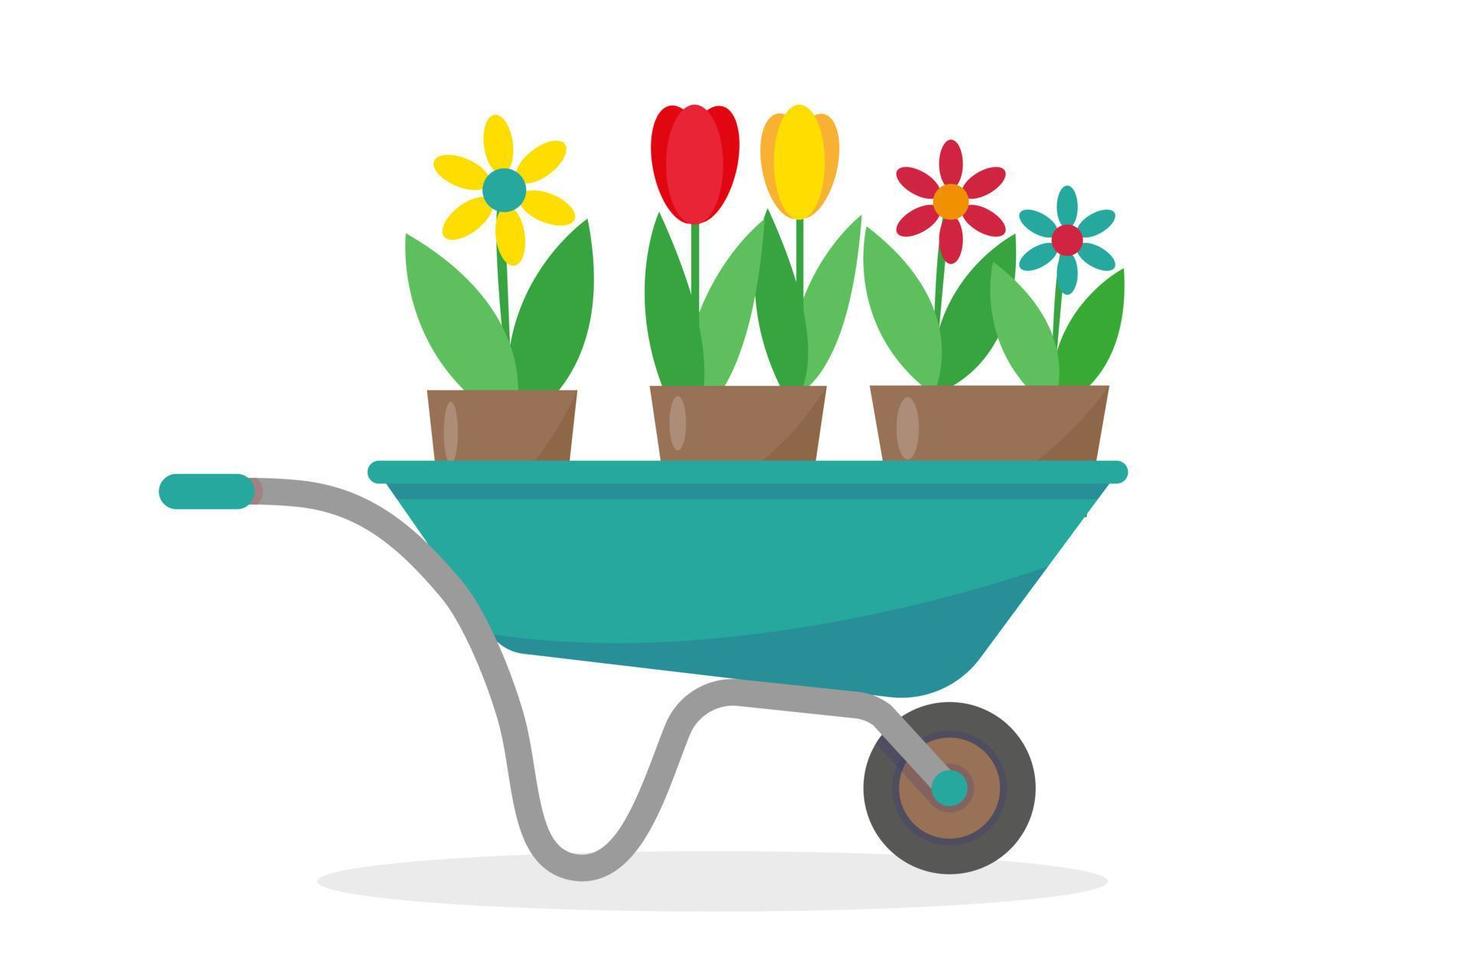 carro de jardín con flores en macetas. Ilustración de vector de elemento de herramientas de jardinería de primavera o verano.